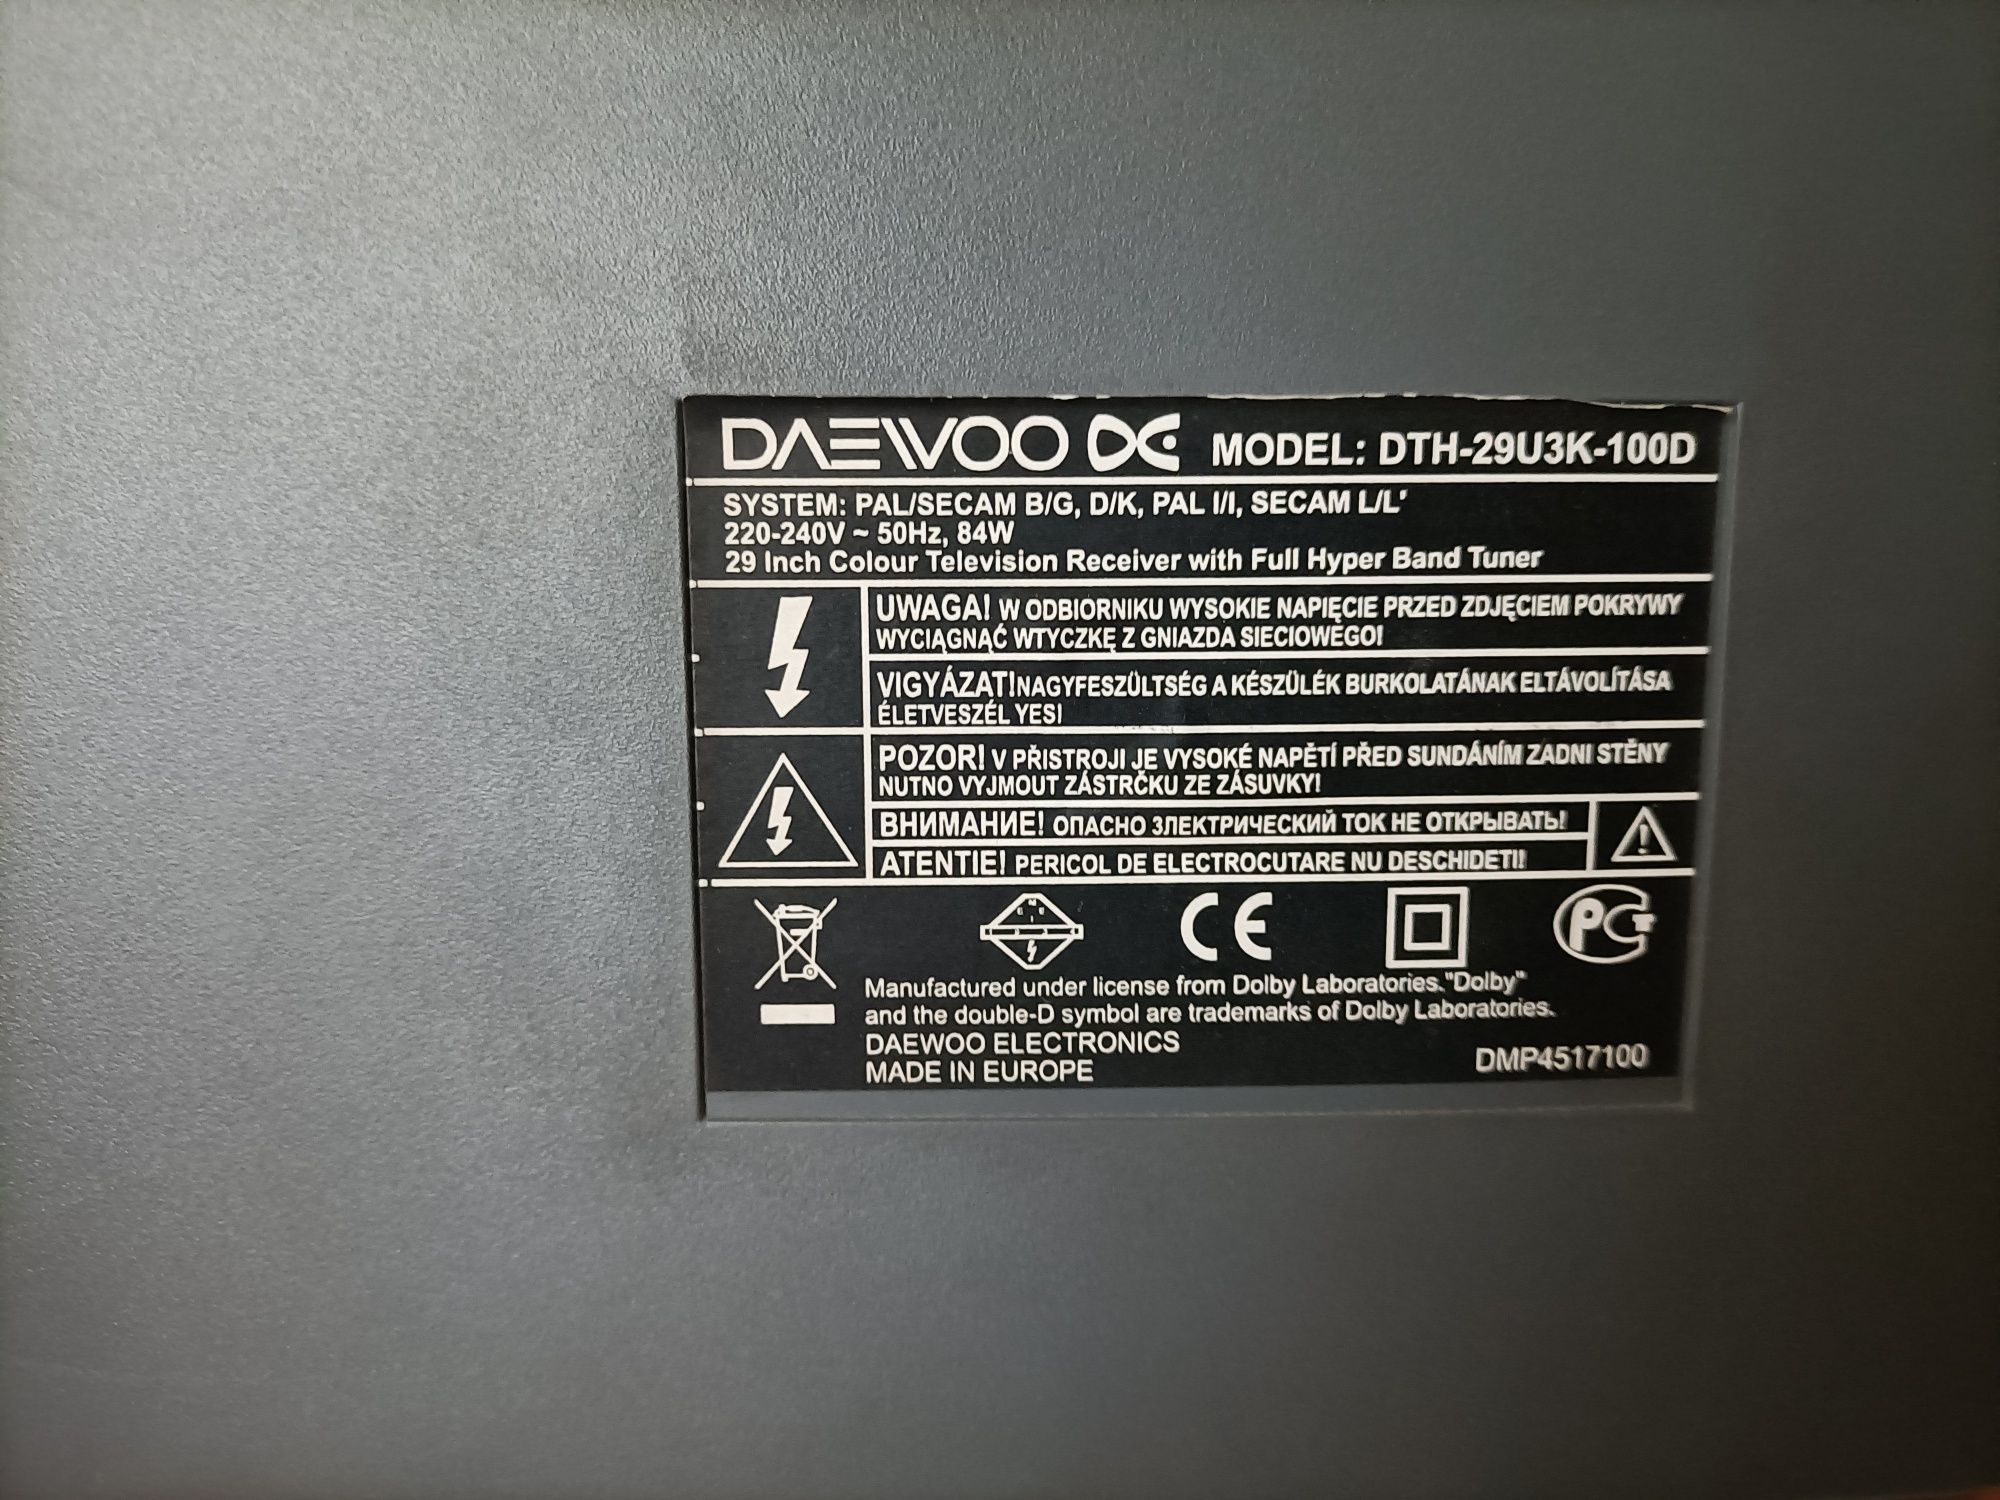 Telewizor Daewoo + dekoder